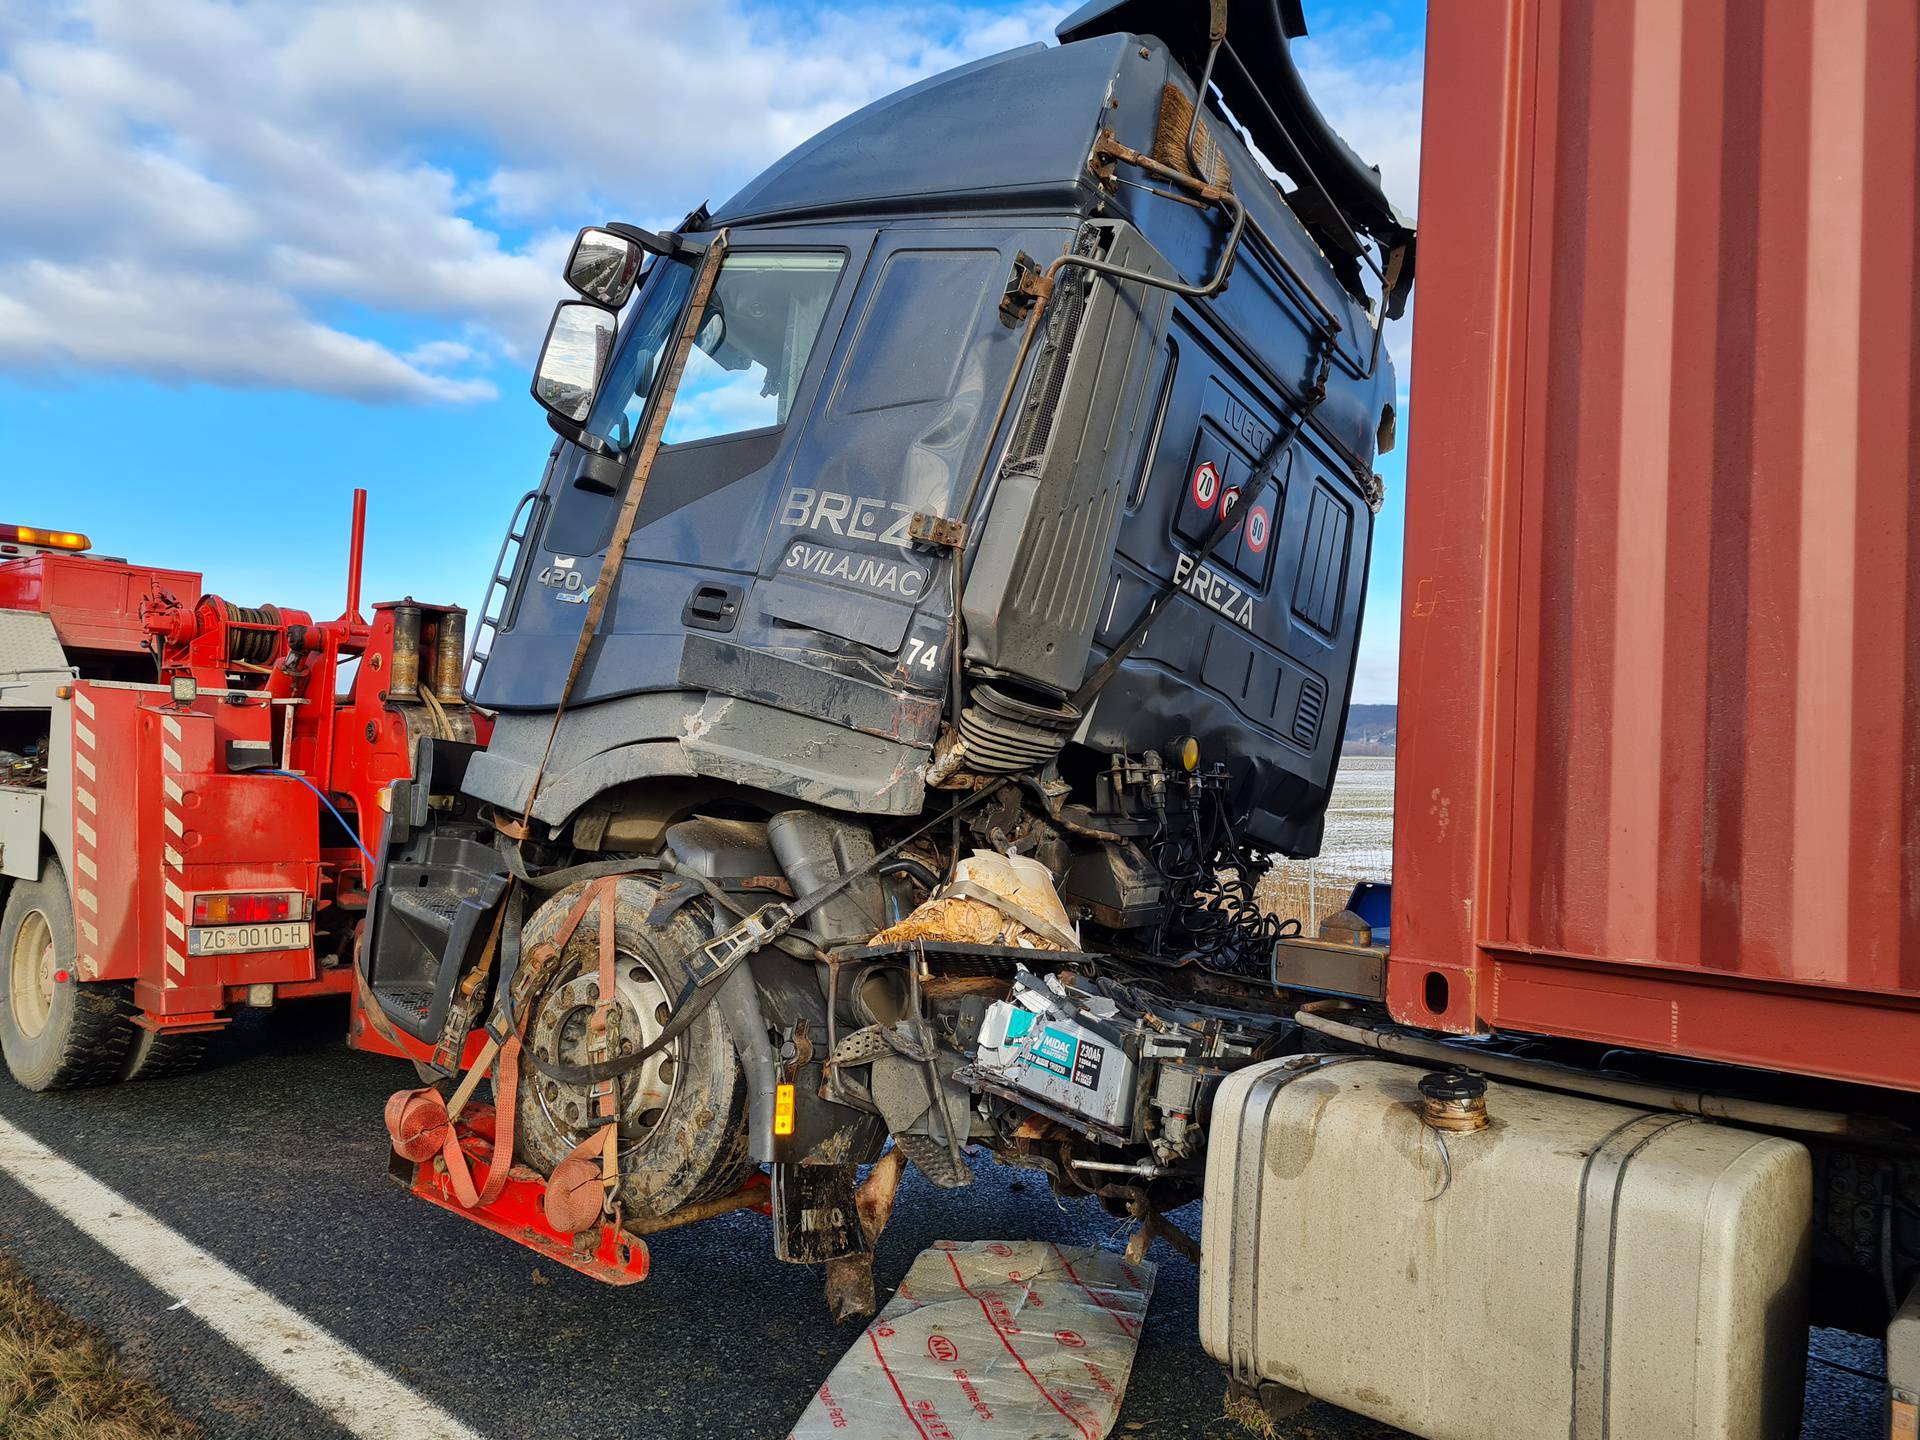 Vozač jednog od kamiona iz sudara kod Novske: 'Čista je sreća da netko nije poginuo'